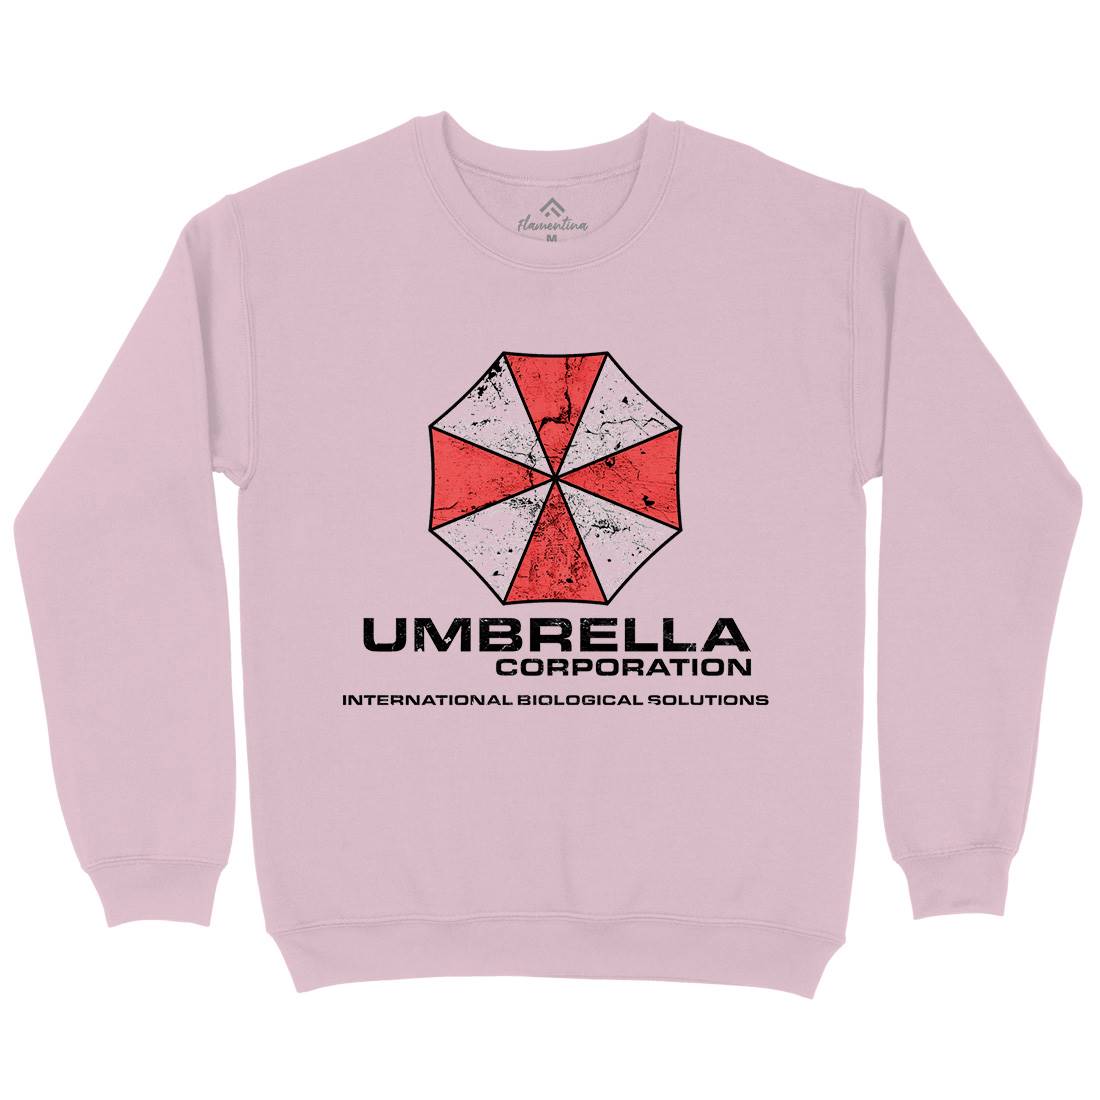 Umbrella Corp Kids Crew Neck Sweatshirt Horror D439